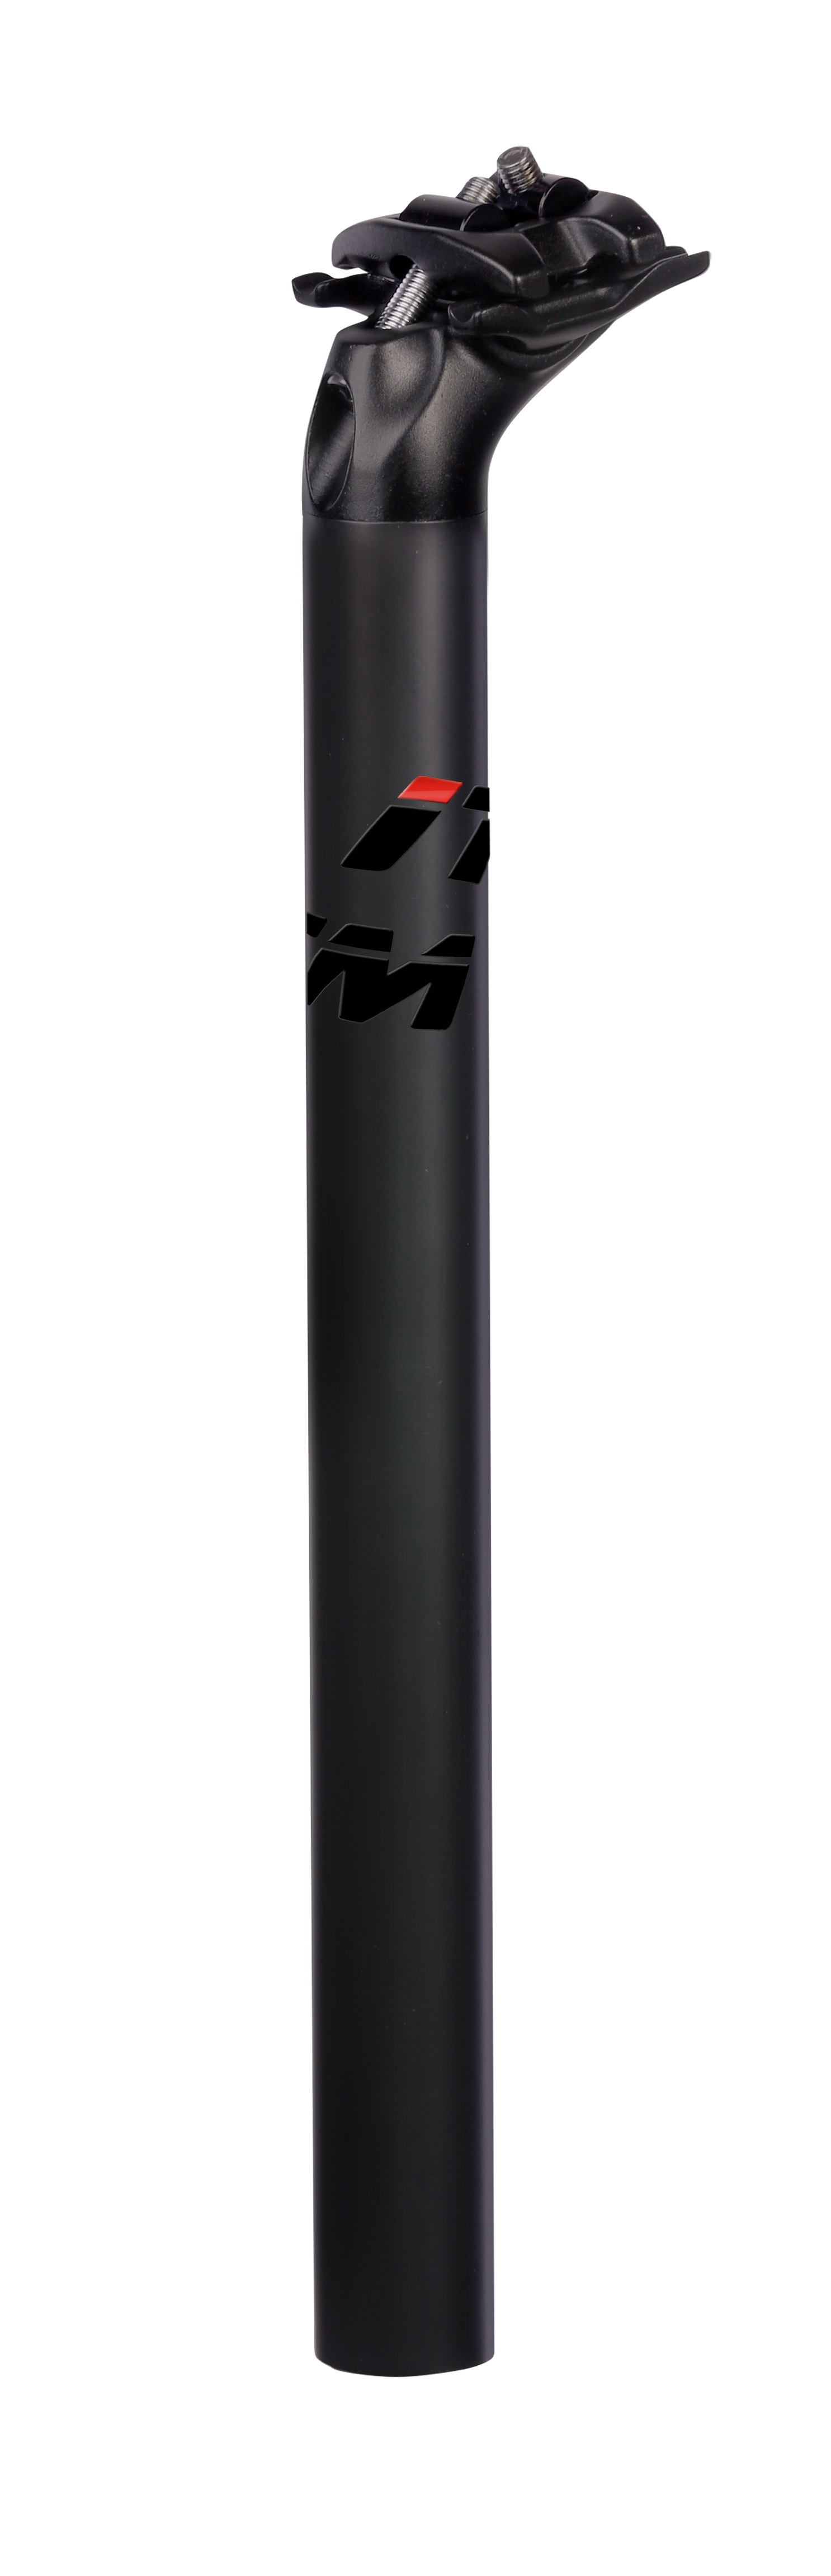 sedlovka ITM KERO 31,6/400mm, karbon/Al, černá mat